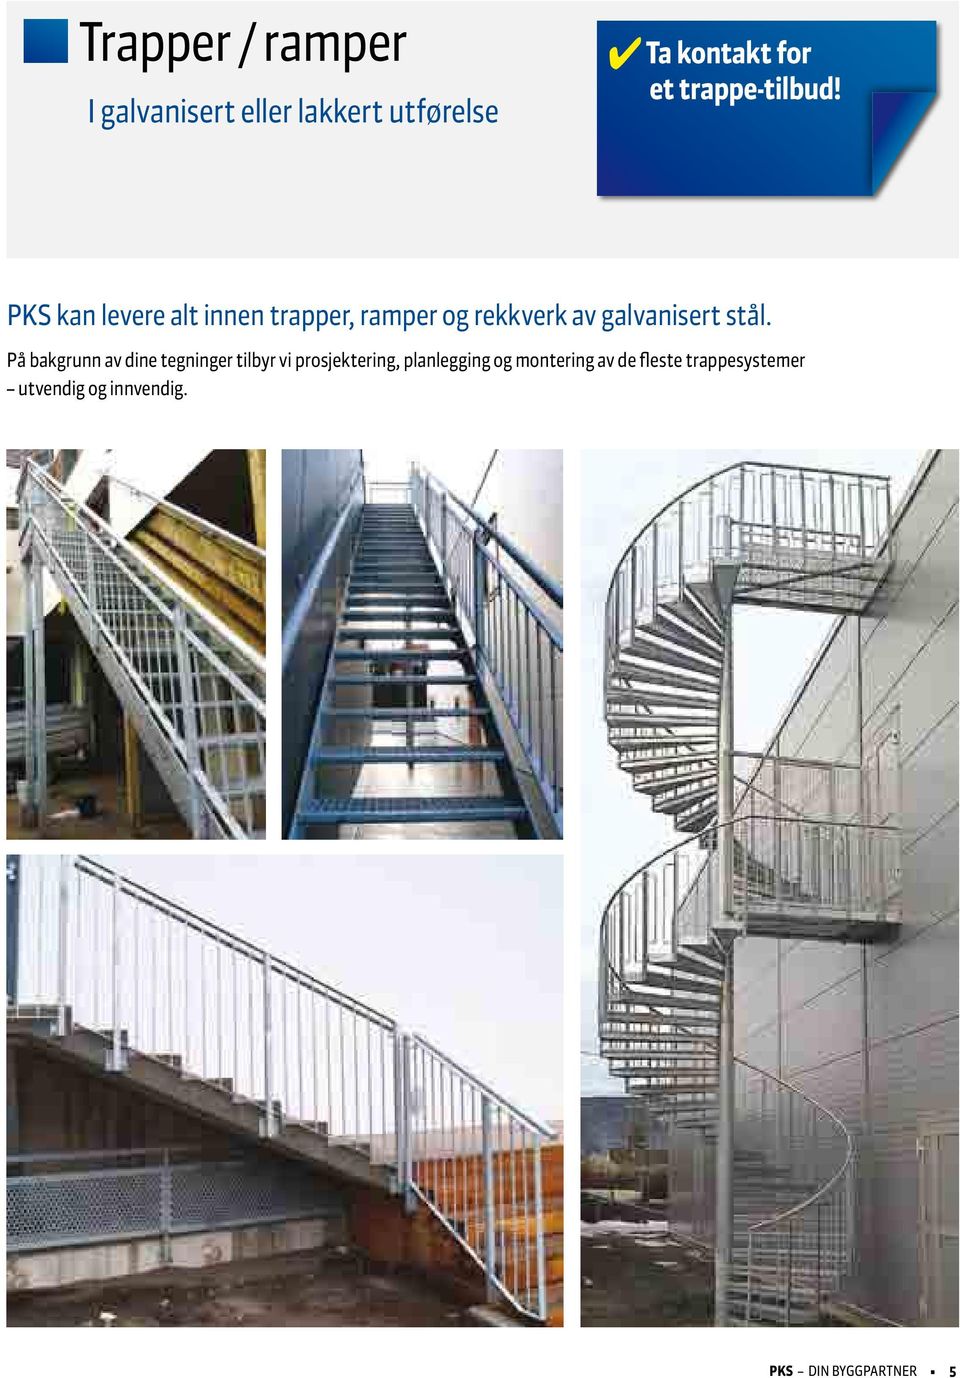 PKS kan levere alt innen trapper, ramper og rekkverk av galvanisert stål.